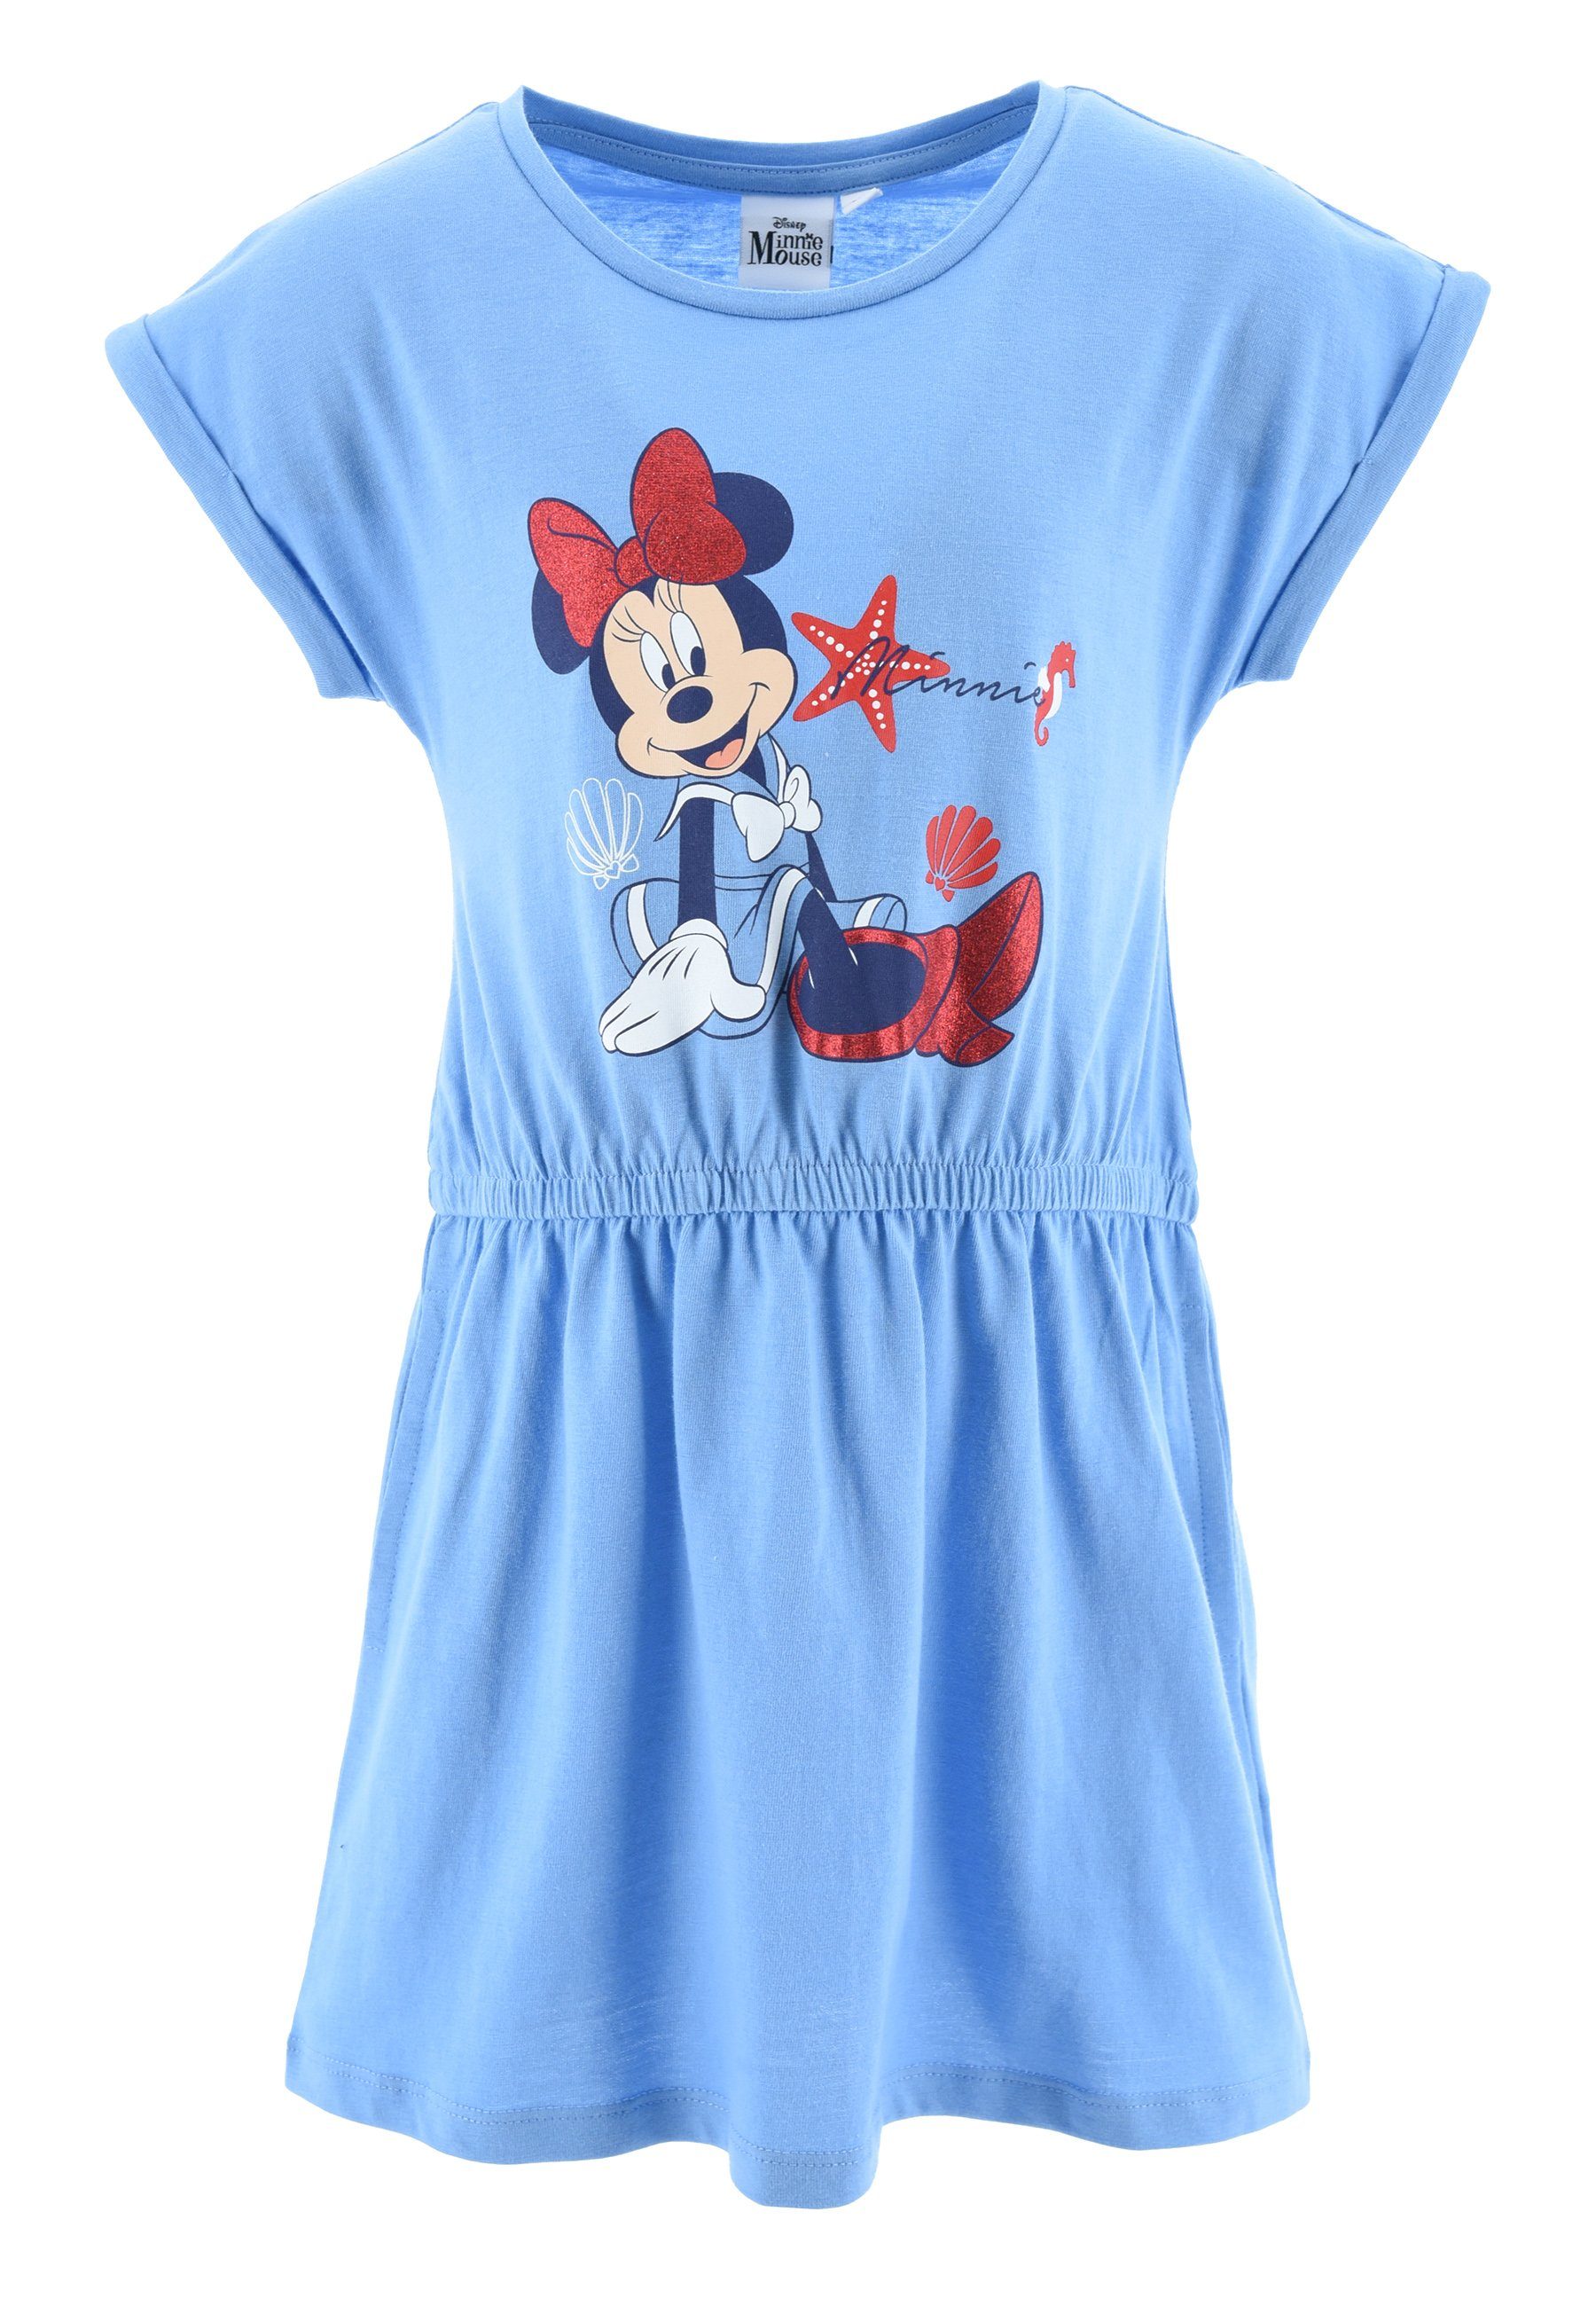 Disney Minnie Mouse Sommerkleid Mädchen kurzarm Sommer-Kleid Strand-Kleid Blau